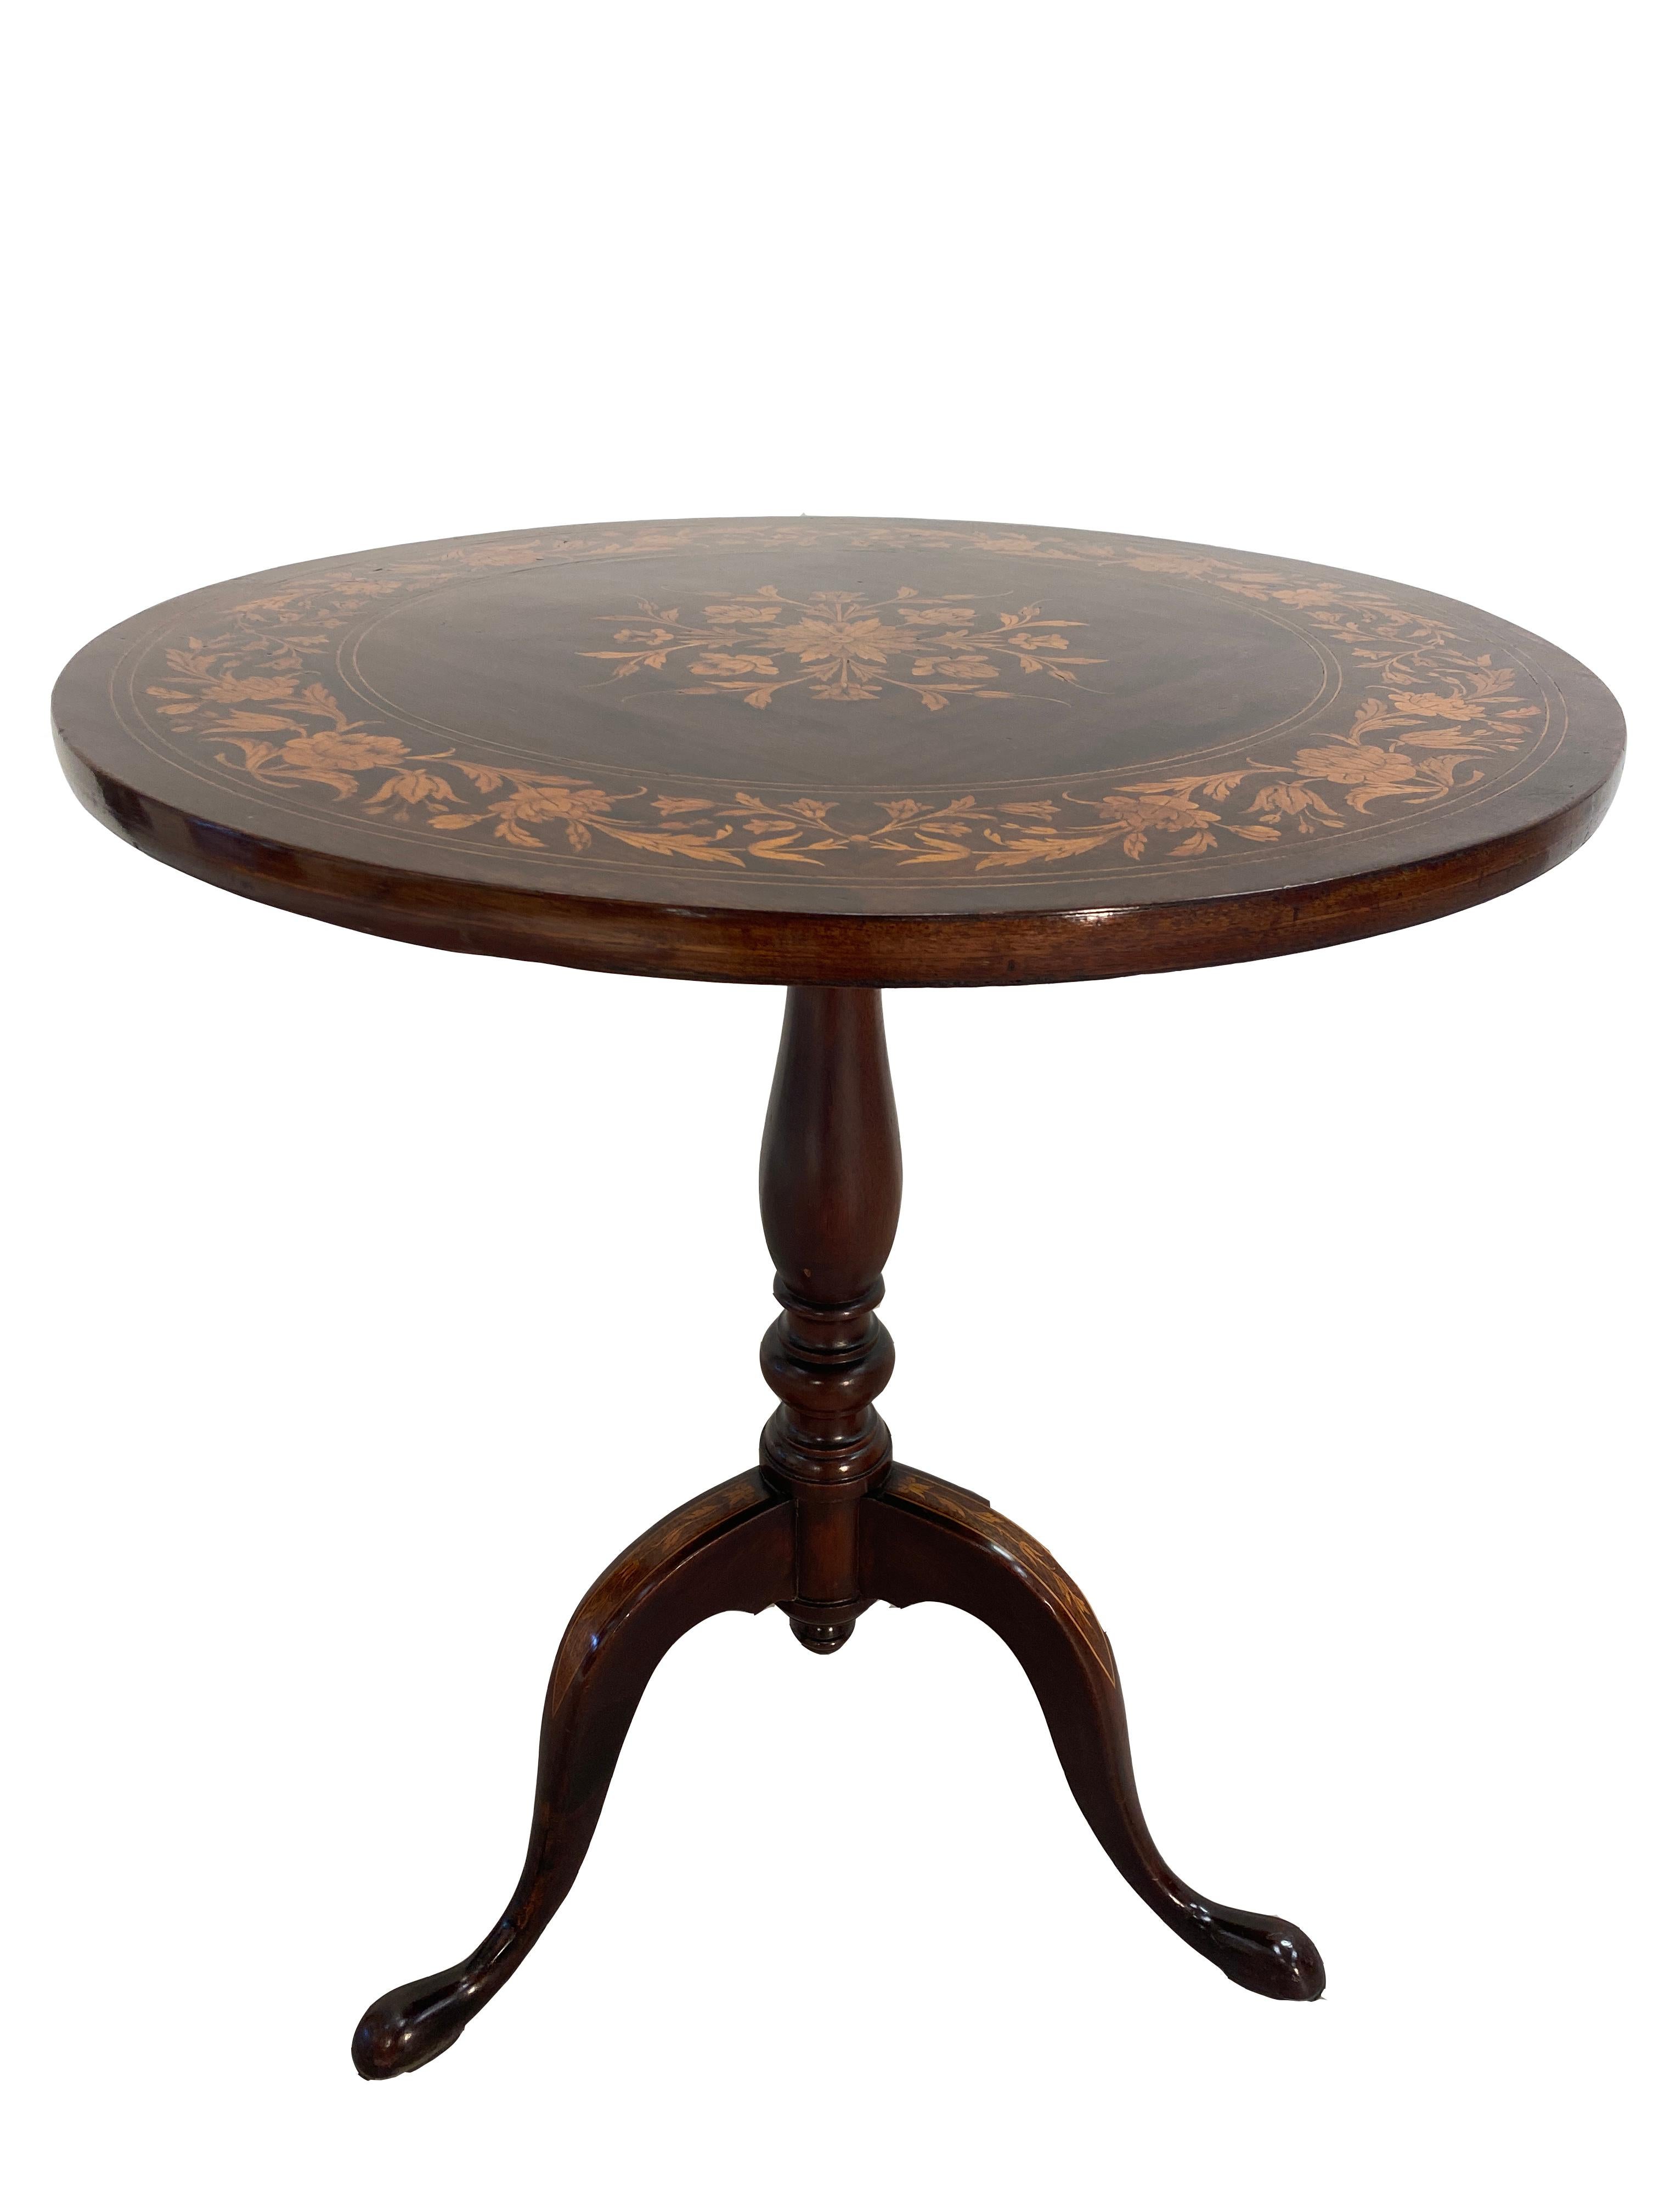 Dies ist ein sehr guter Zustand Mahagoni Englisch Regency Kippplatte Zitzen Tisch mit Intarsien. Der runde Tisch ist an einem dreibeinigen Gestell befestigt. Die Platte und die Beine sind mit Intarsien verziert. Die Oberfläche ist hochglanzpoliert.